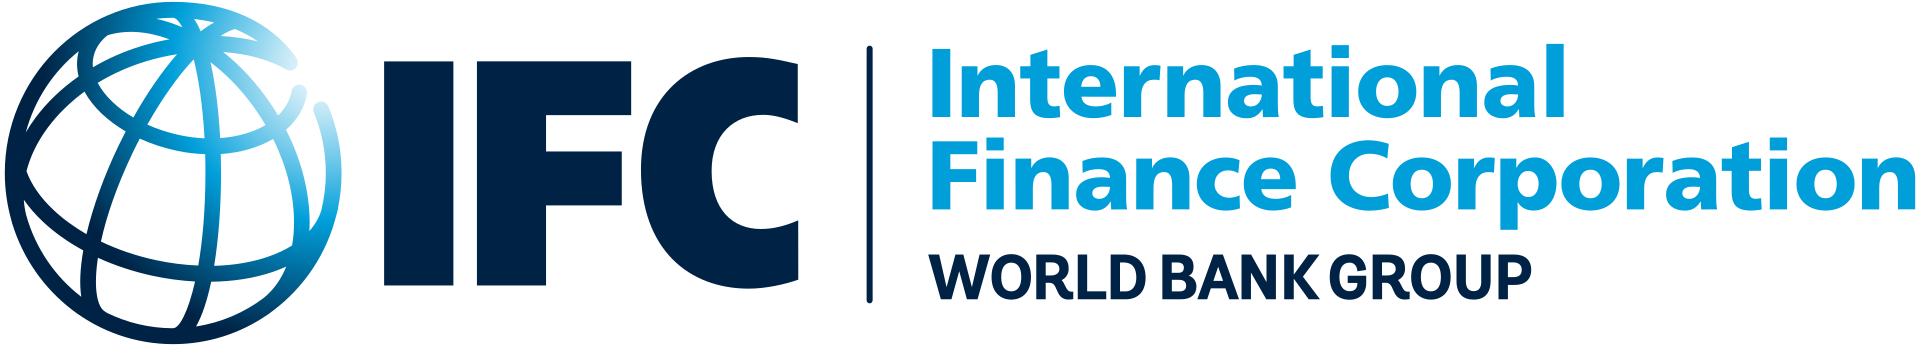 World Bank Group - IFC - International Finance Corporation - Международная финансовая корпорация Всемирного банка